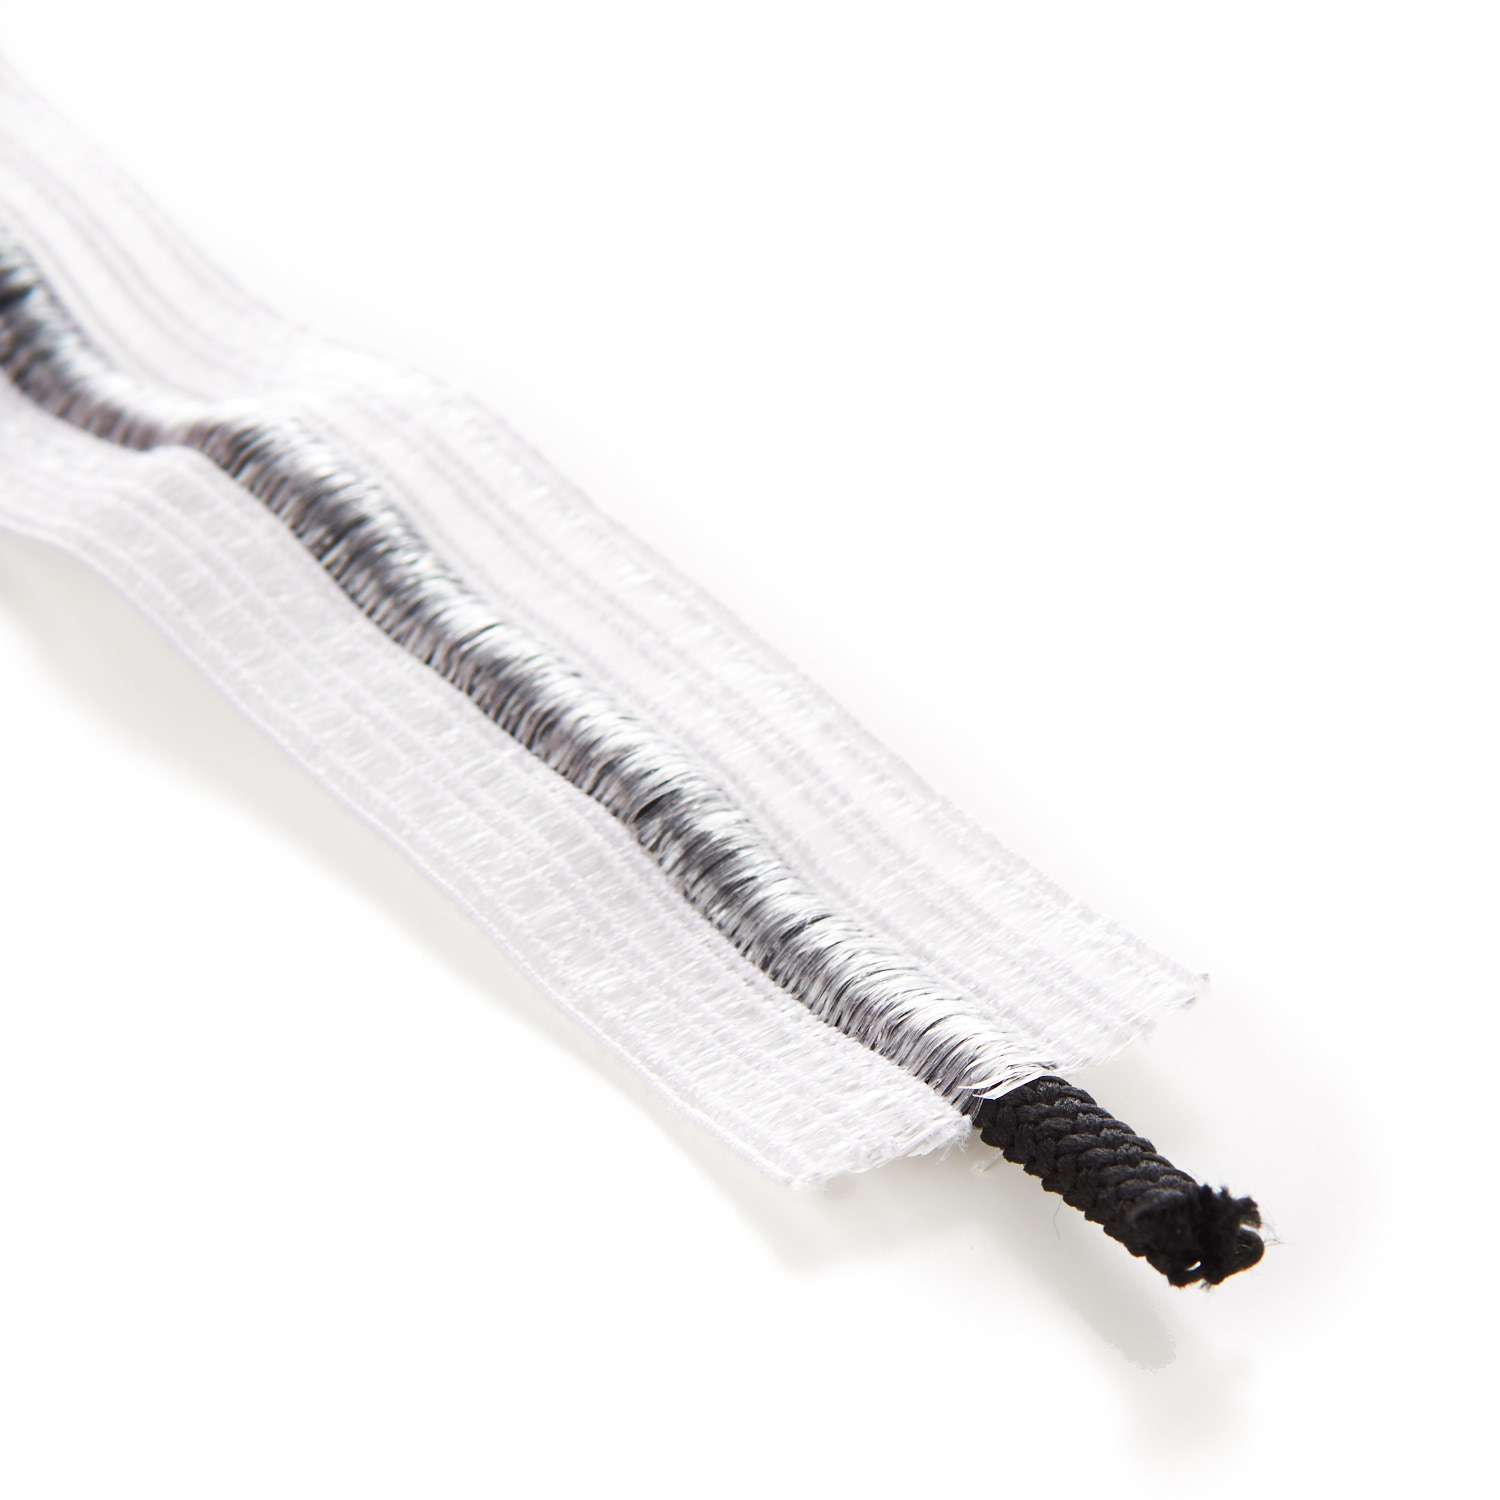 32mm Bonadex Elastic White Black Drawstring Cord